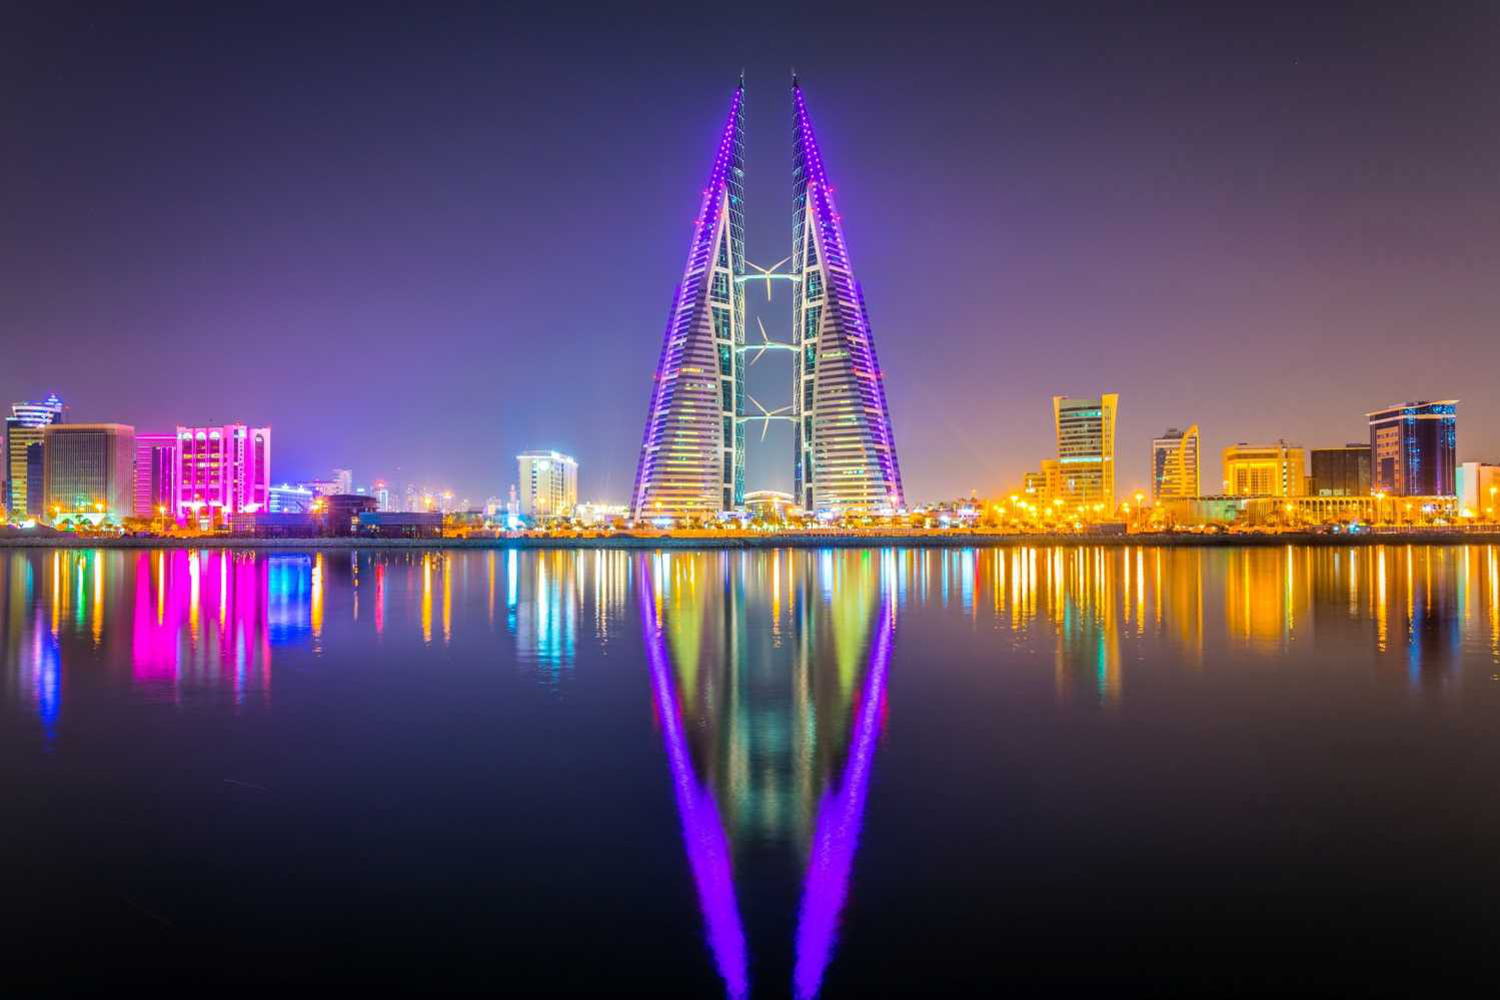 visit bahrain.bh